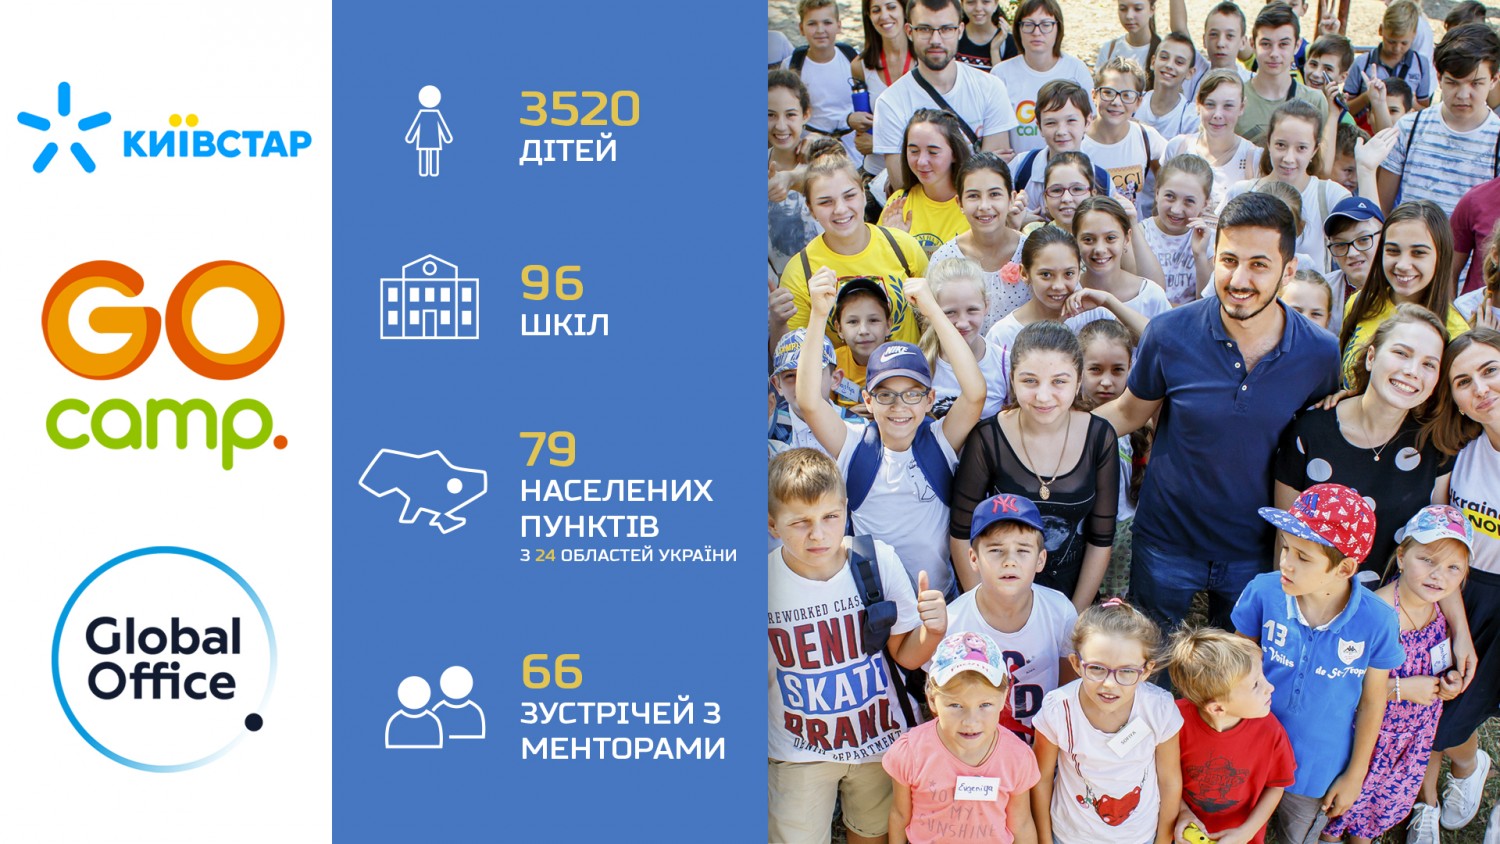 Київстар та Global Office навчили понад 3500 школярів культурі підприємницької діяльності